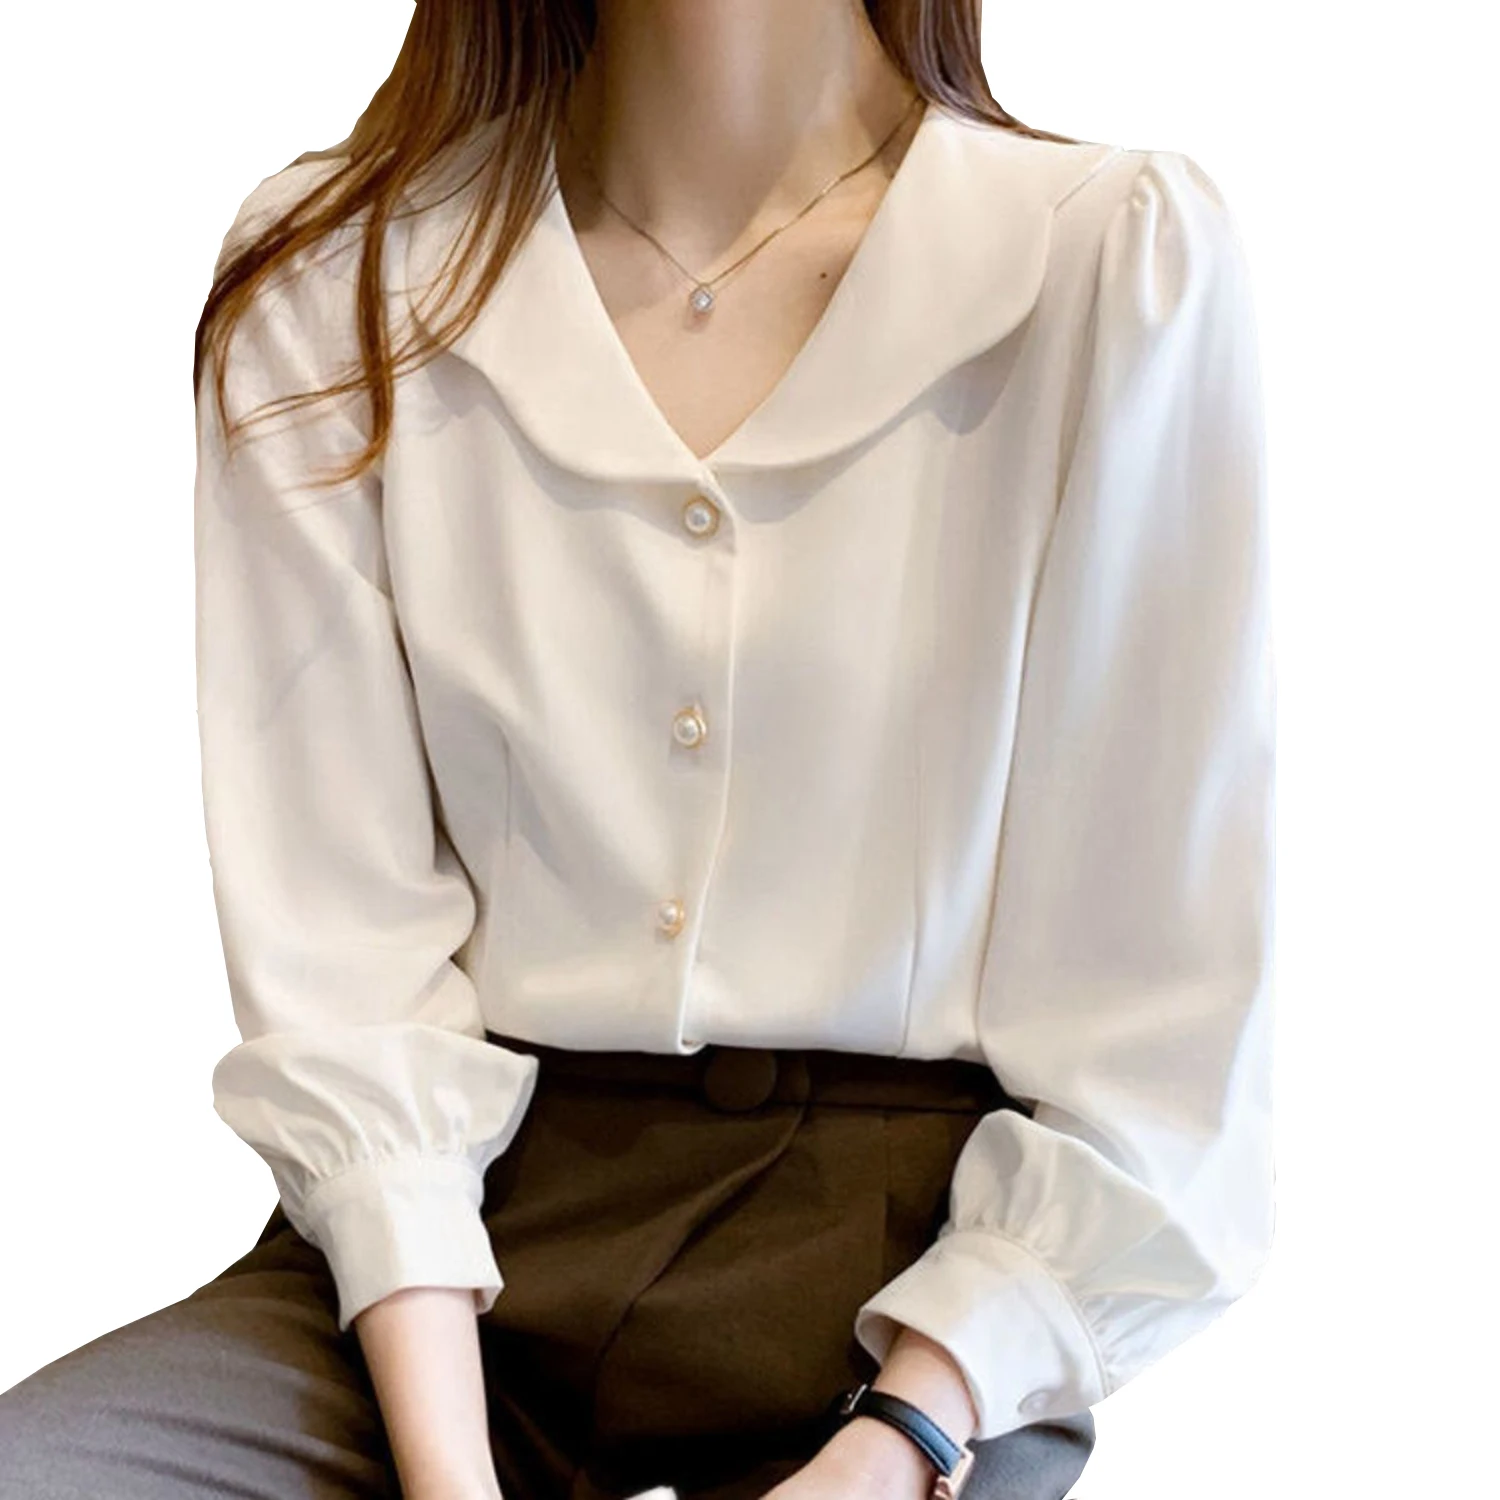 

Женская шифоновая блузка, белая рубашка в стиле Питера Пэна, с воротником и длинным рукавом, повседневный Топ во французском стиле, весна 2021